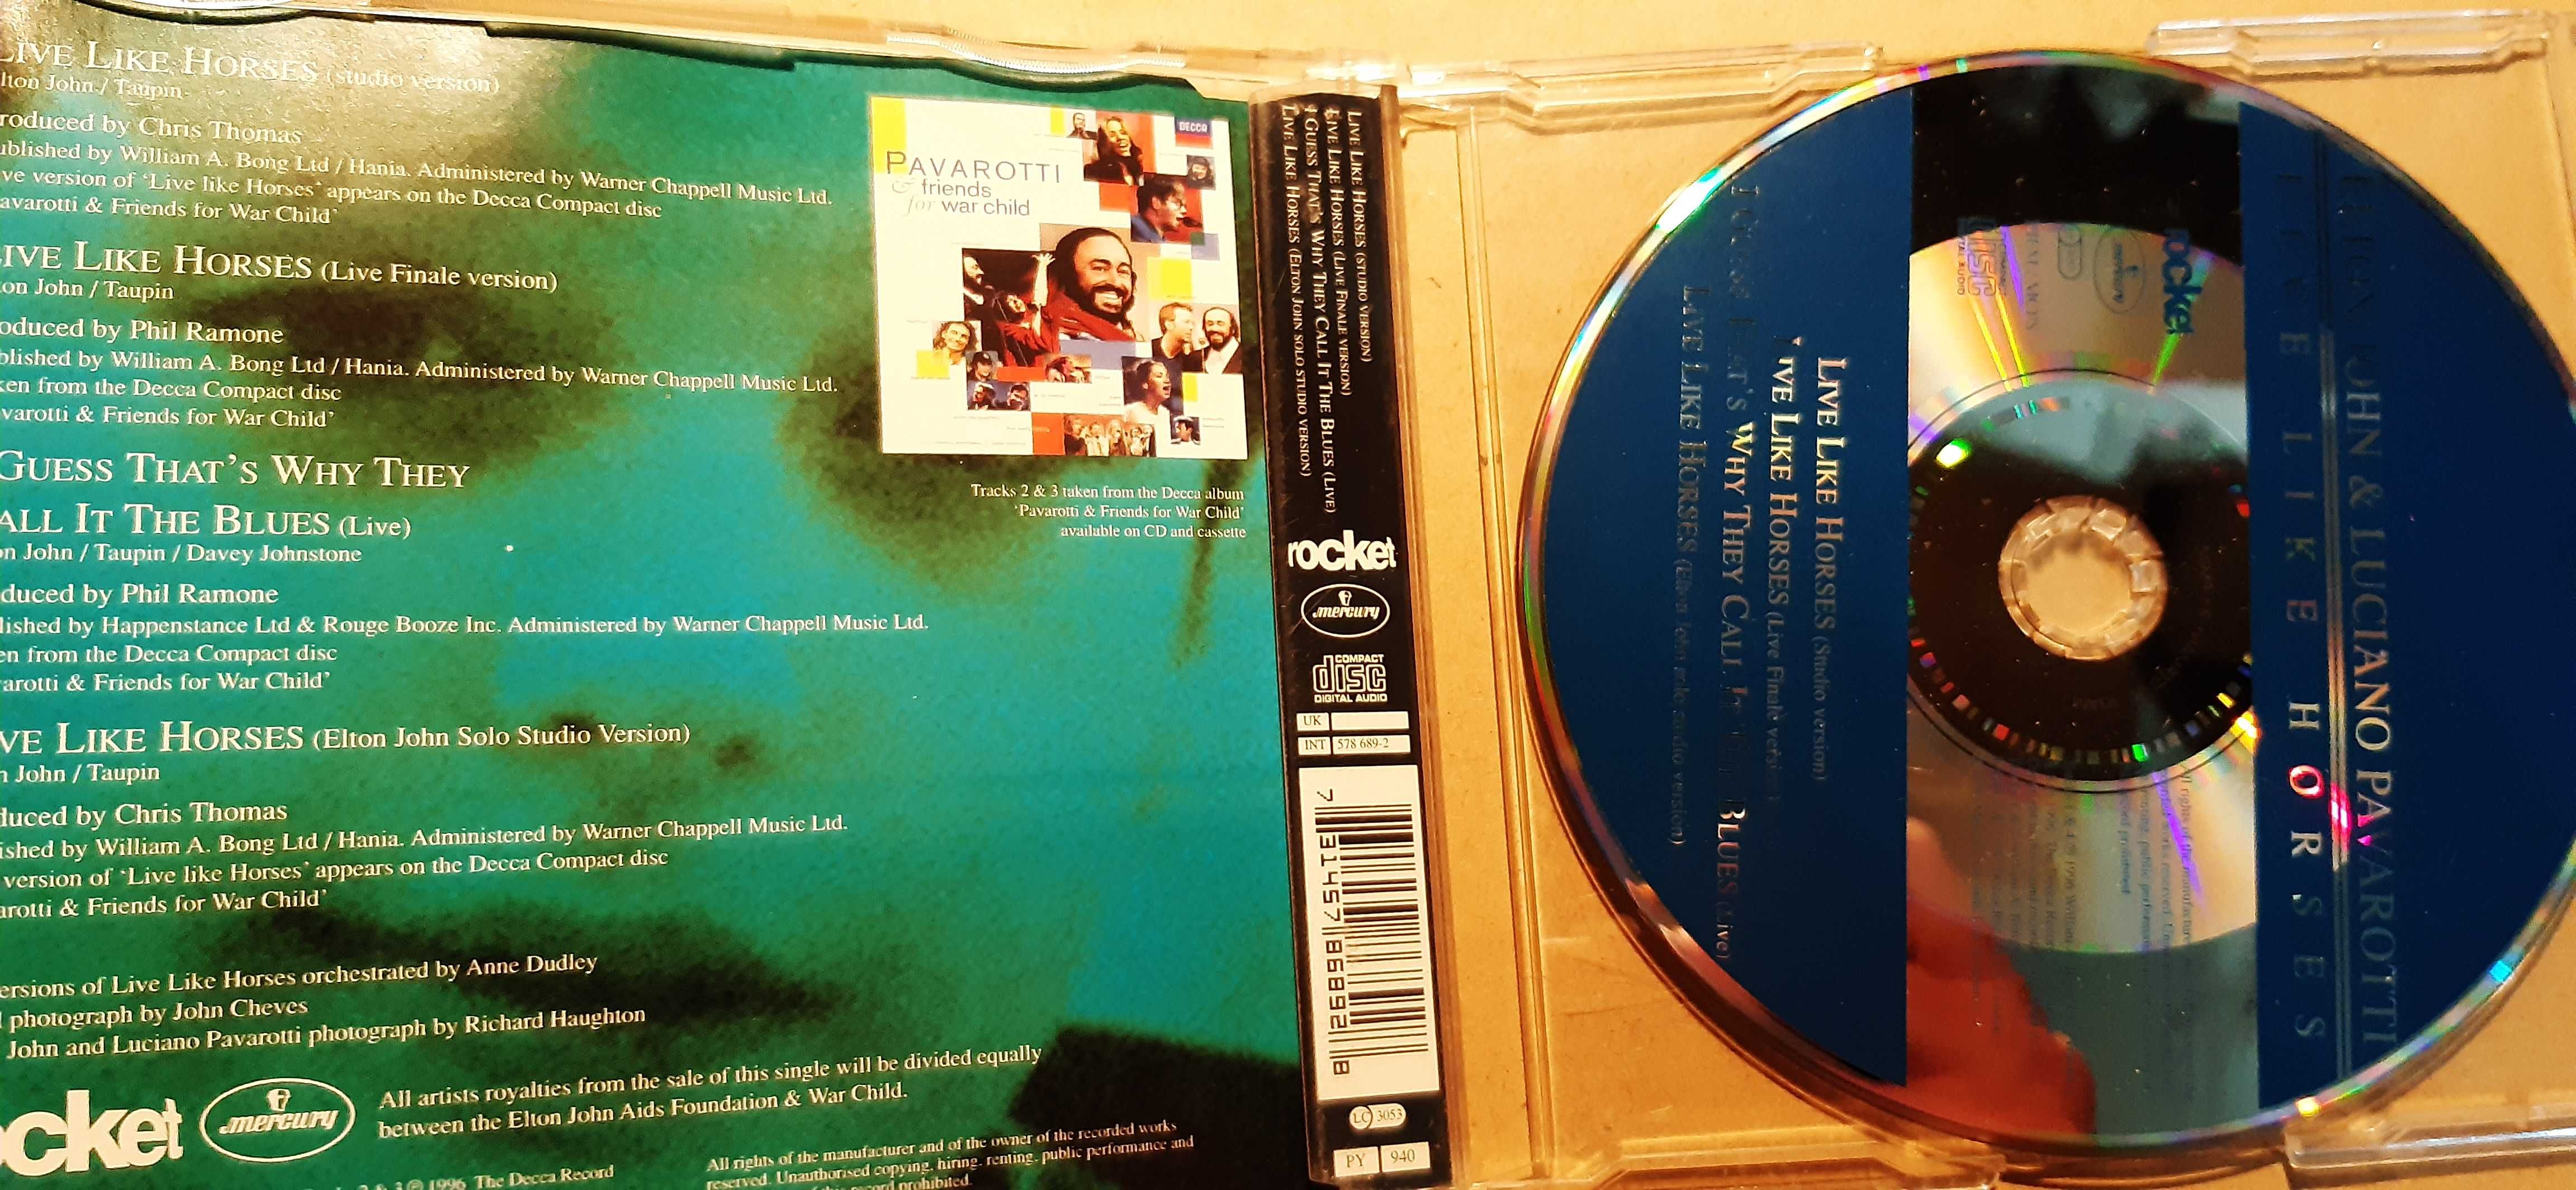 cd singiel Elton John & Luciano Pavarotti – Live Like Horses